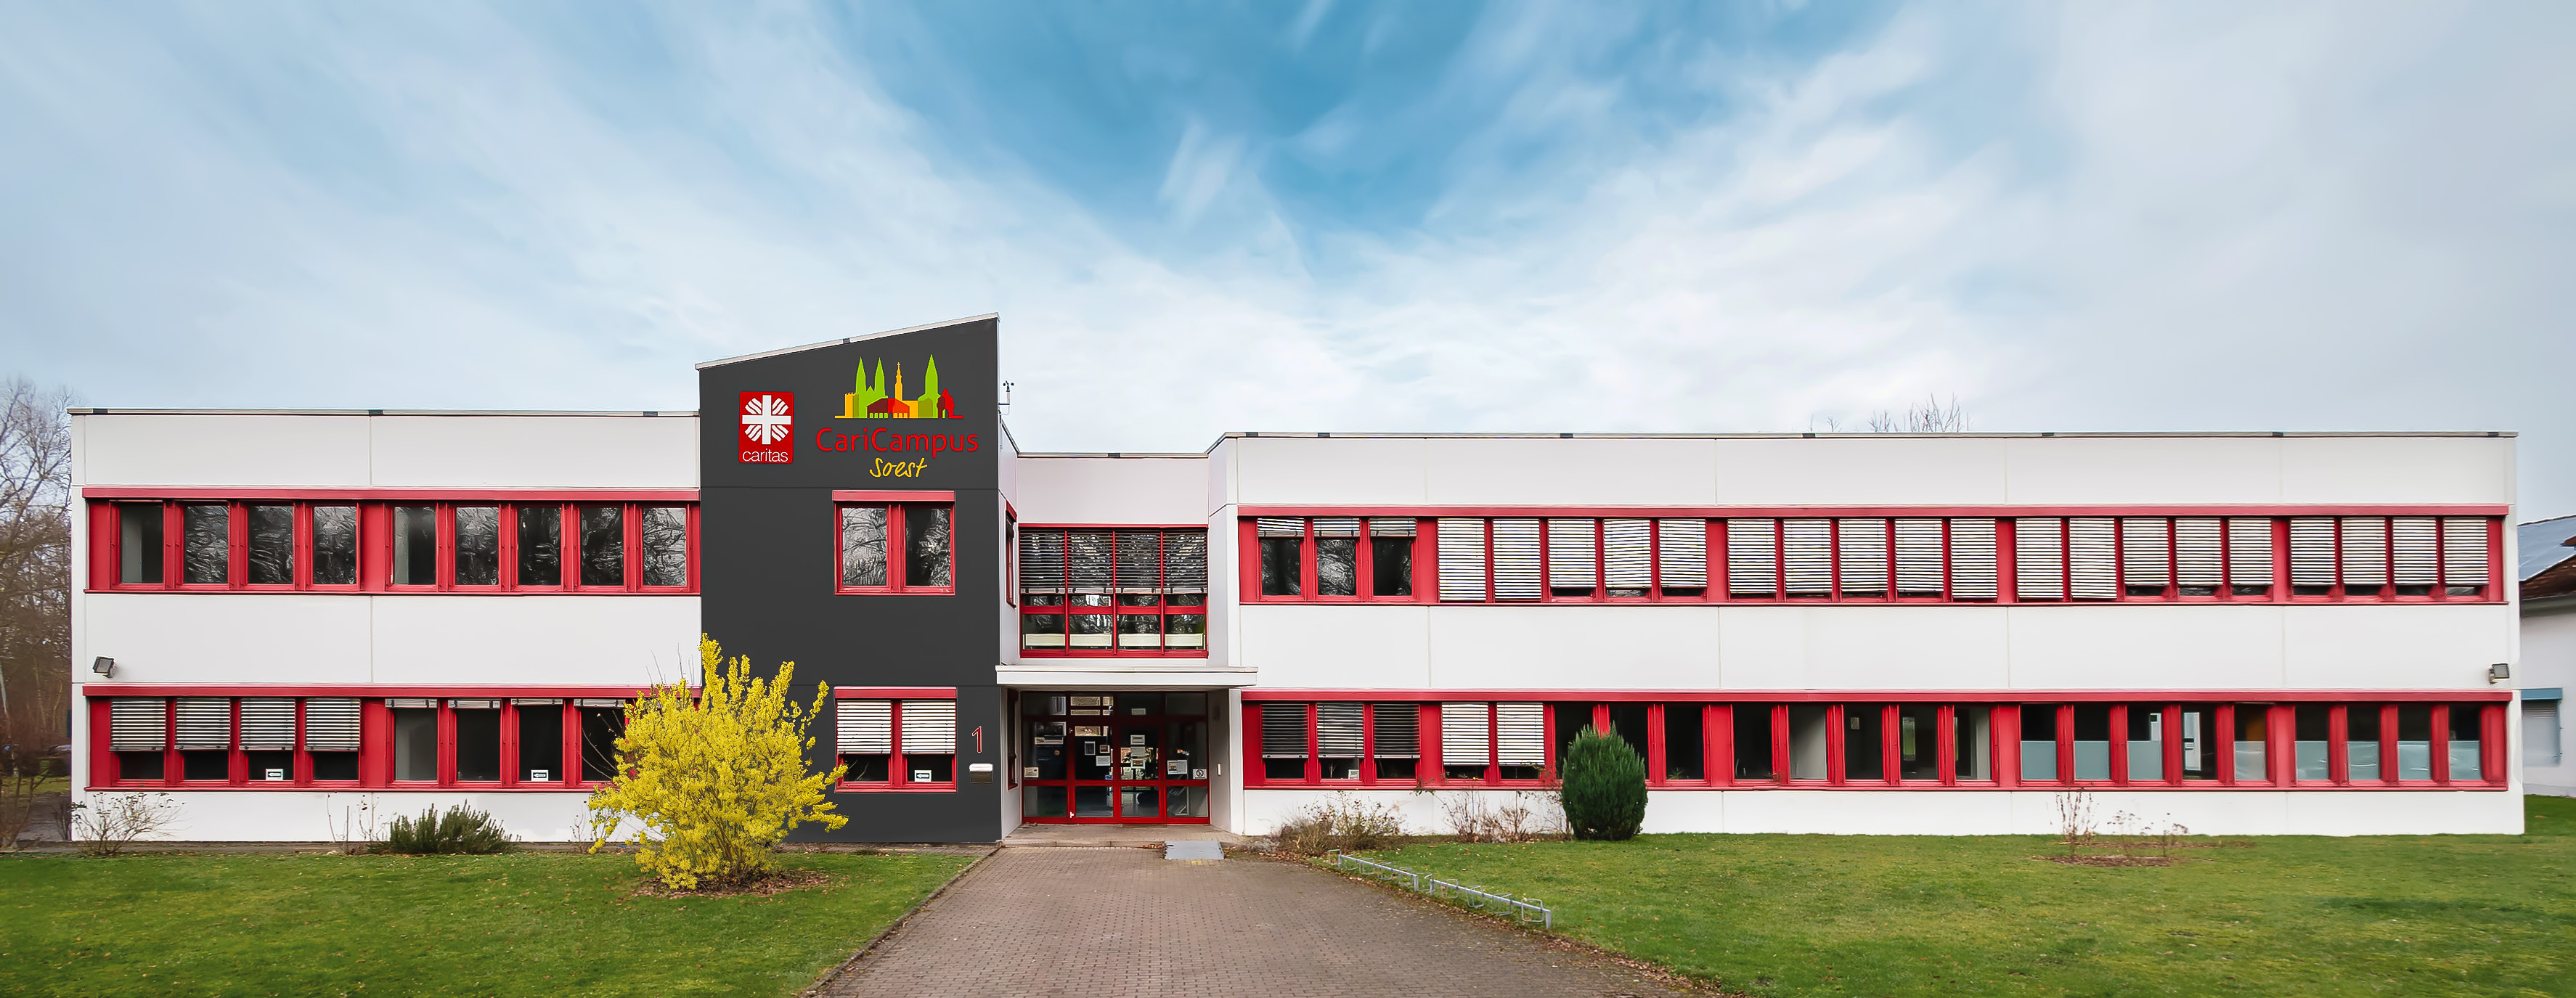 Unsere neue Pflegefachschule in Soest: der CariCampus